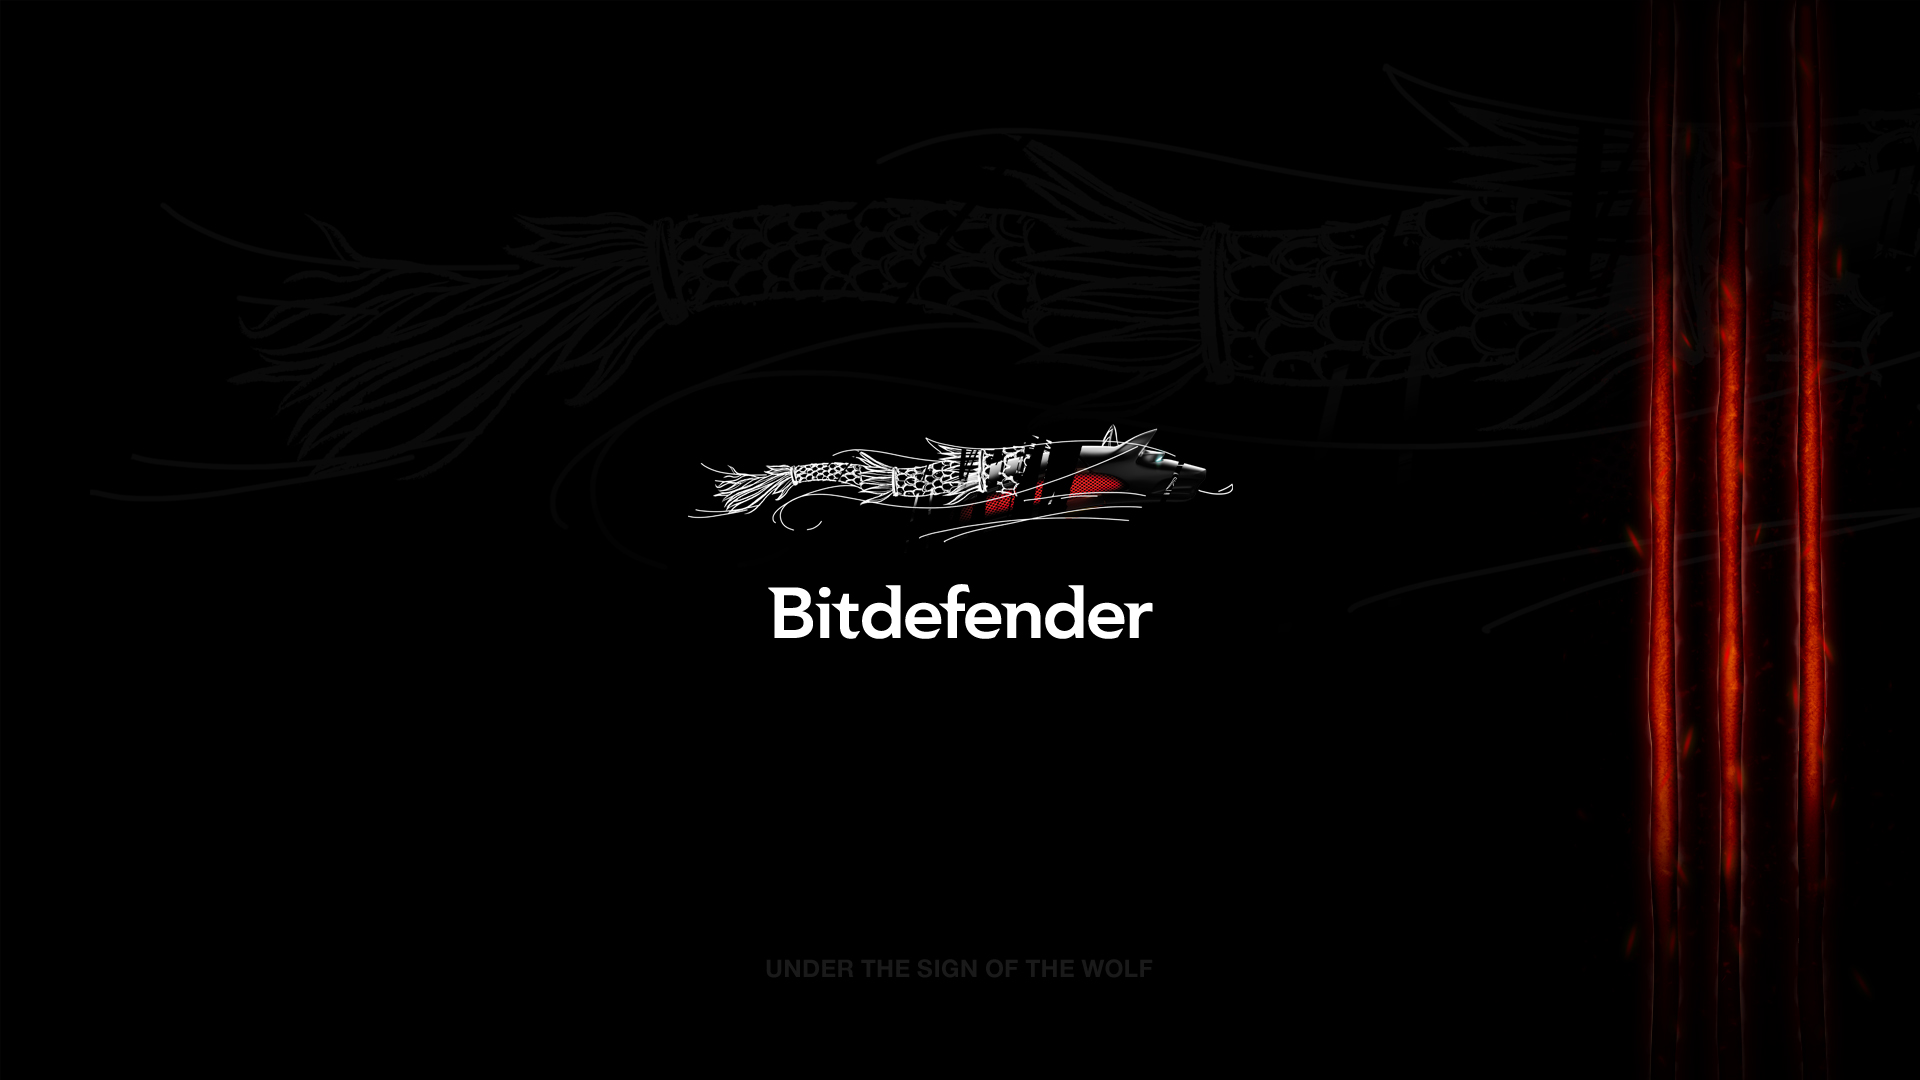 Bitdefender Wallpaper Logos HD Image